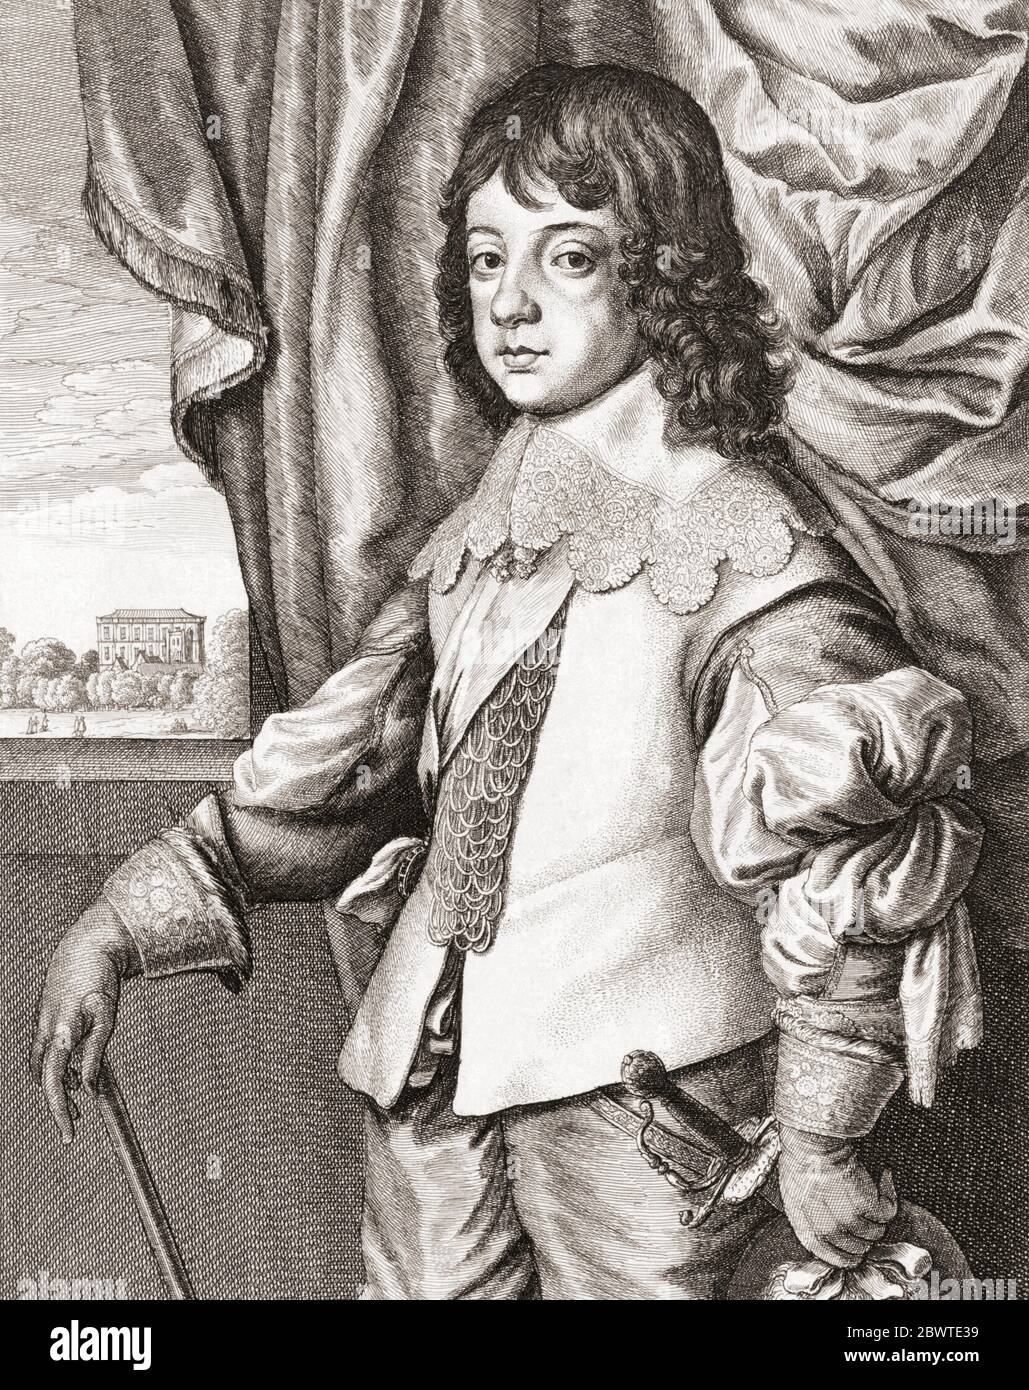 Re Carlo II d'Inghilterra, 1630 - 1685, visto qui come un bambino. Da un lavoro del XVII secolo di Venceslao Hollar, dopo Anthony van Dyck Foto Stock